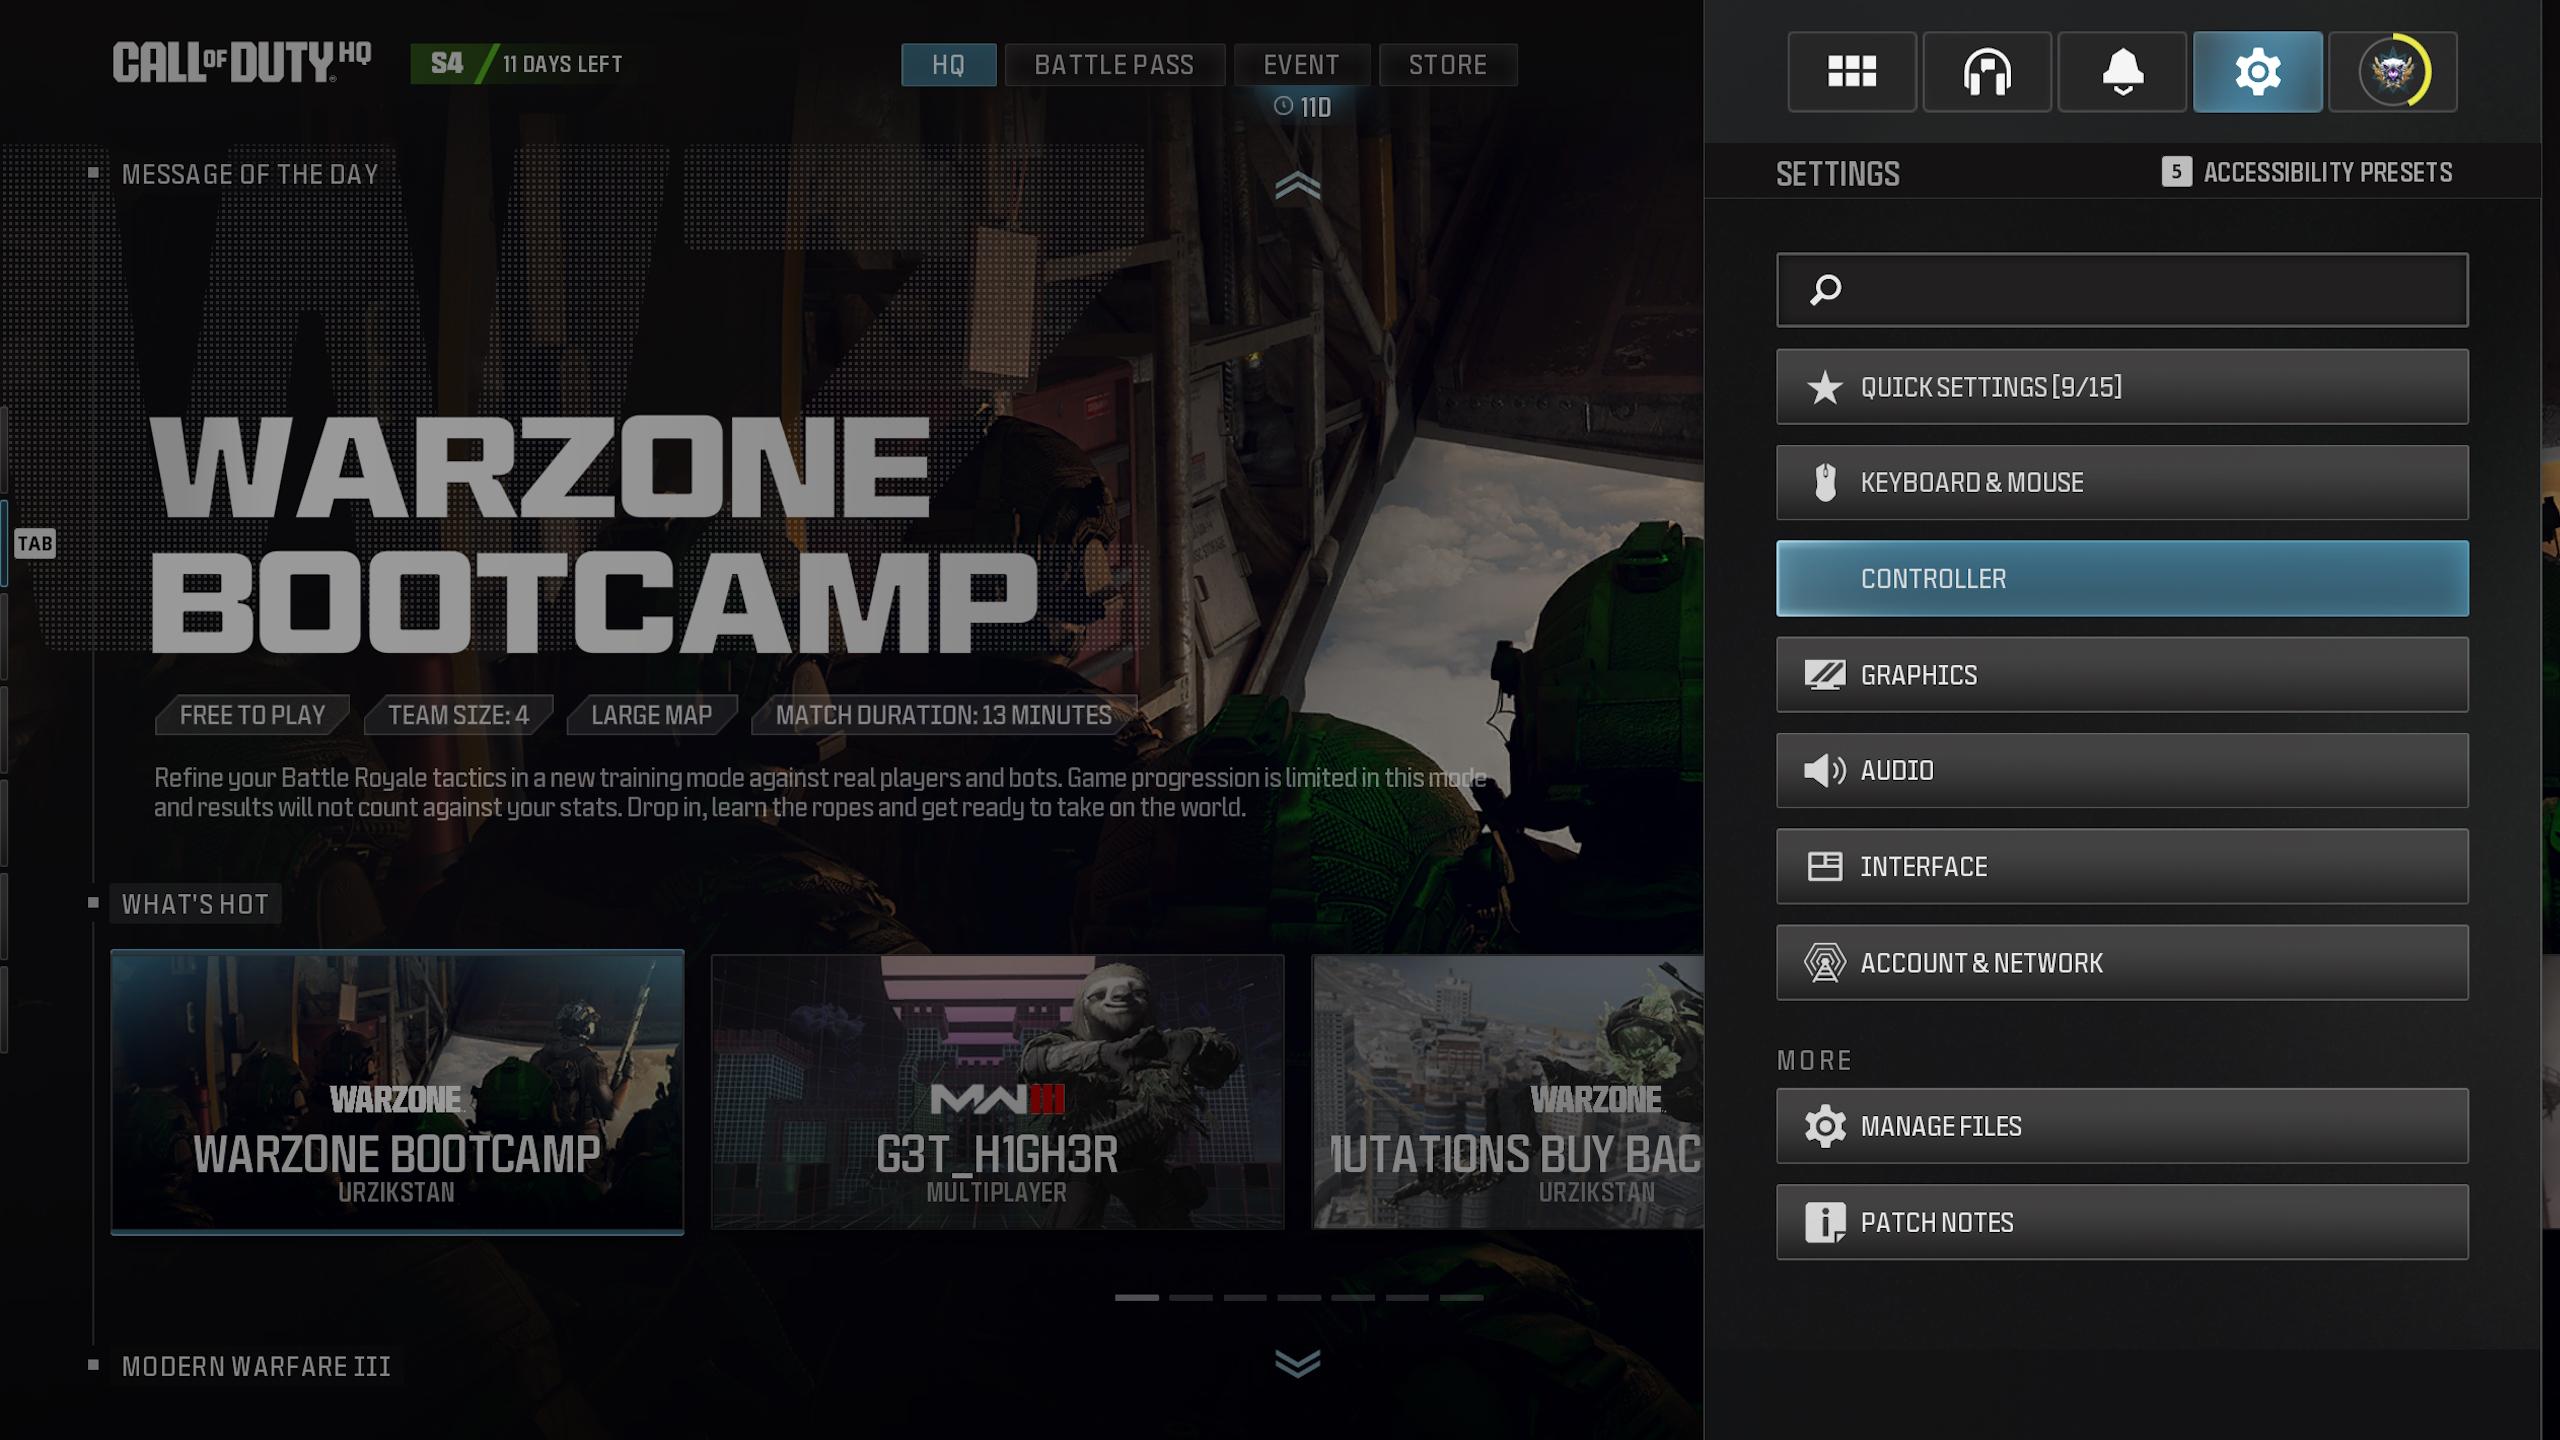 Controller settings UI in Modern Warfare 3.